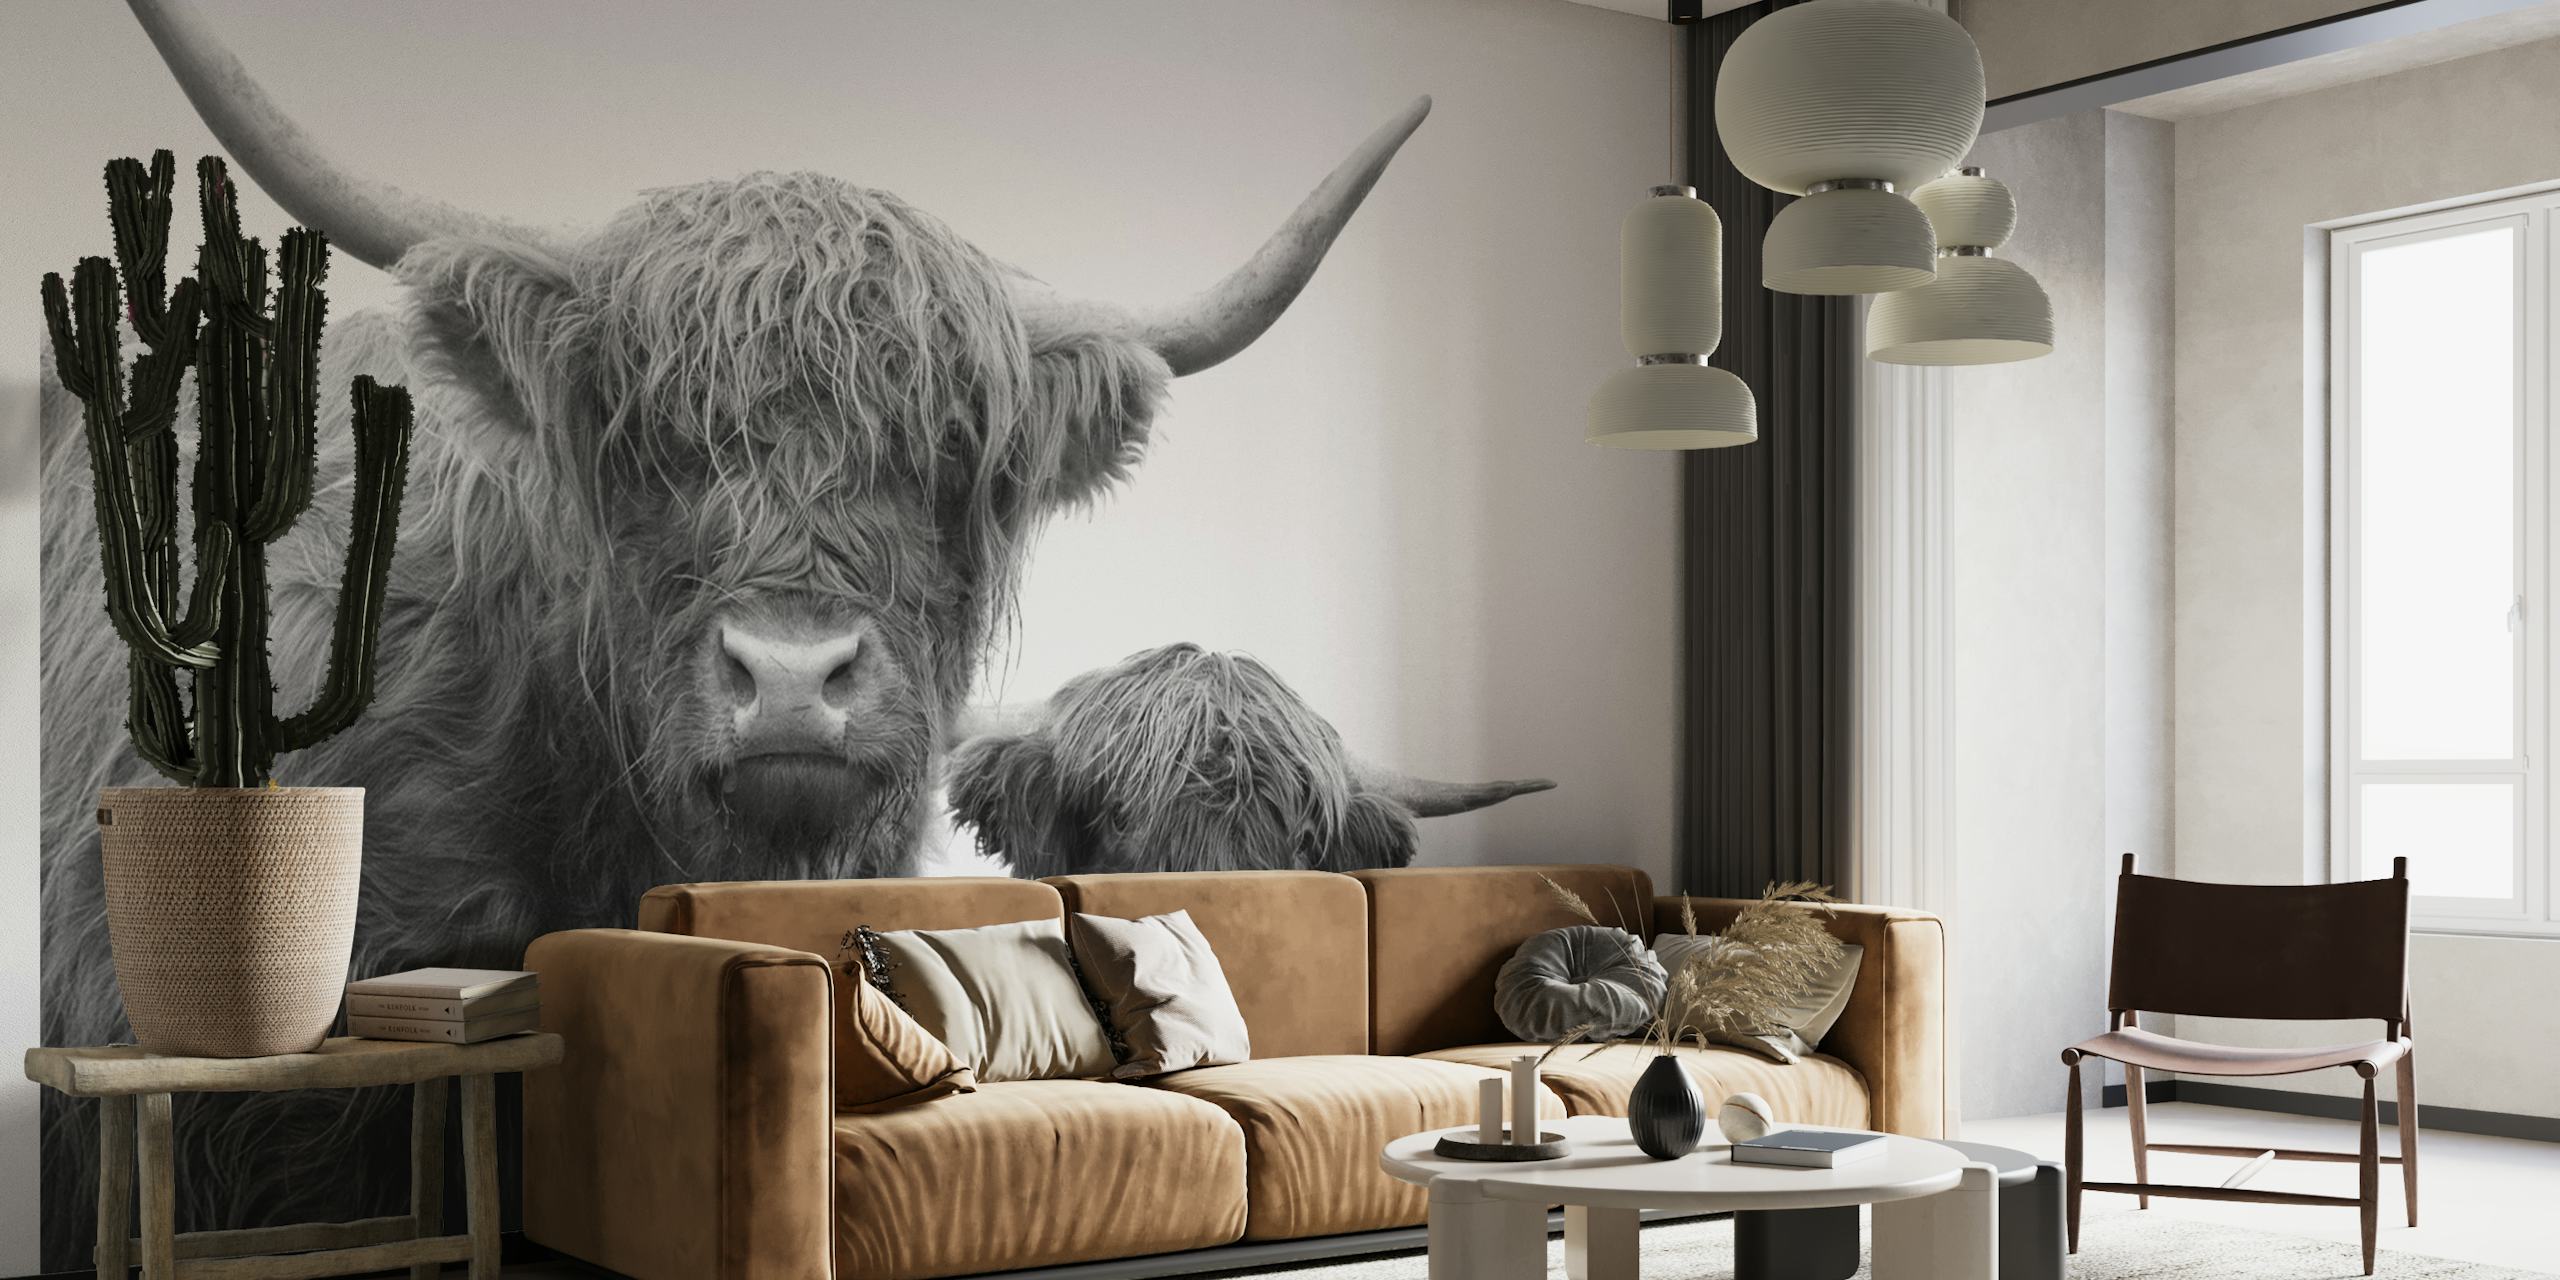 Czarno-biała fototapeta przedstawiająca krowy górskie o bogatej fakturze i spokojnym wyrazie twarzy